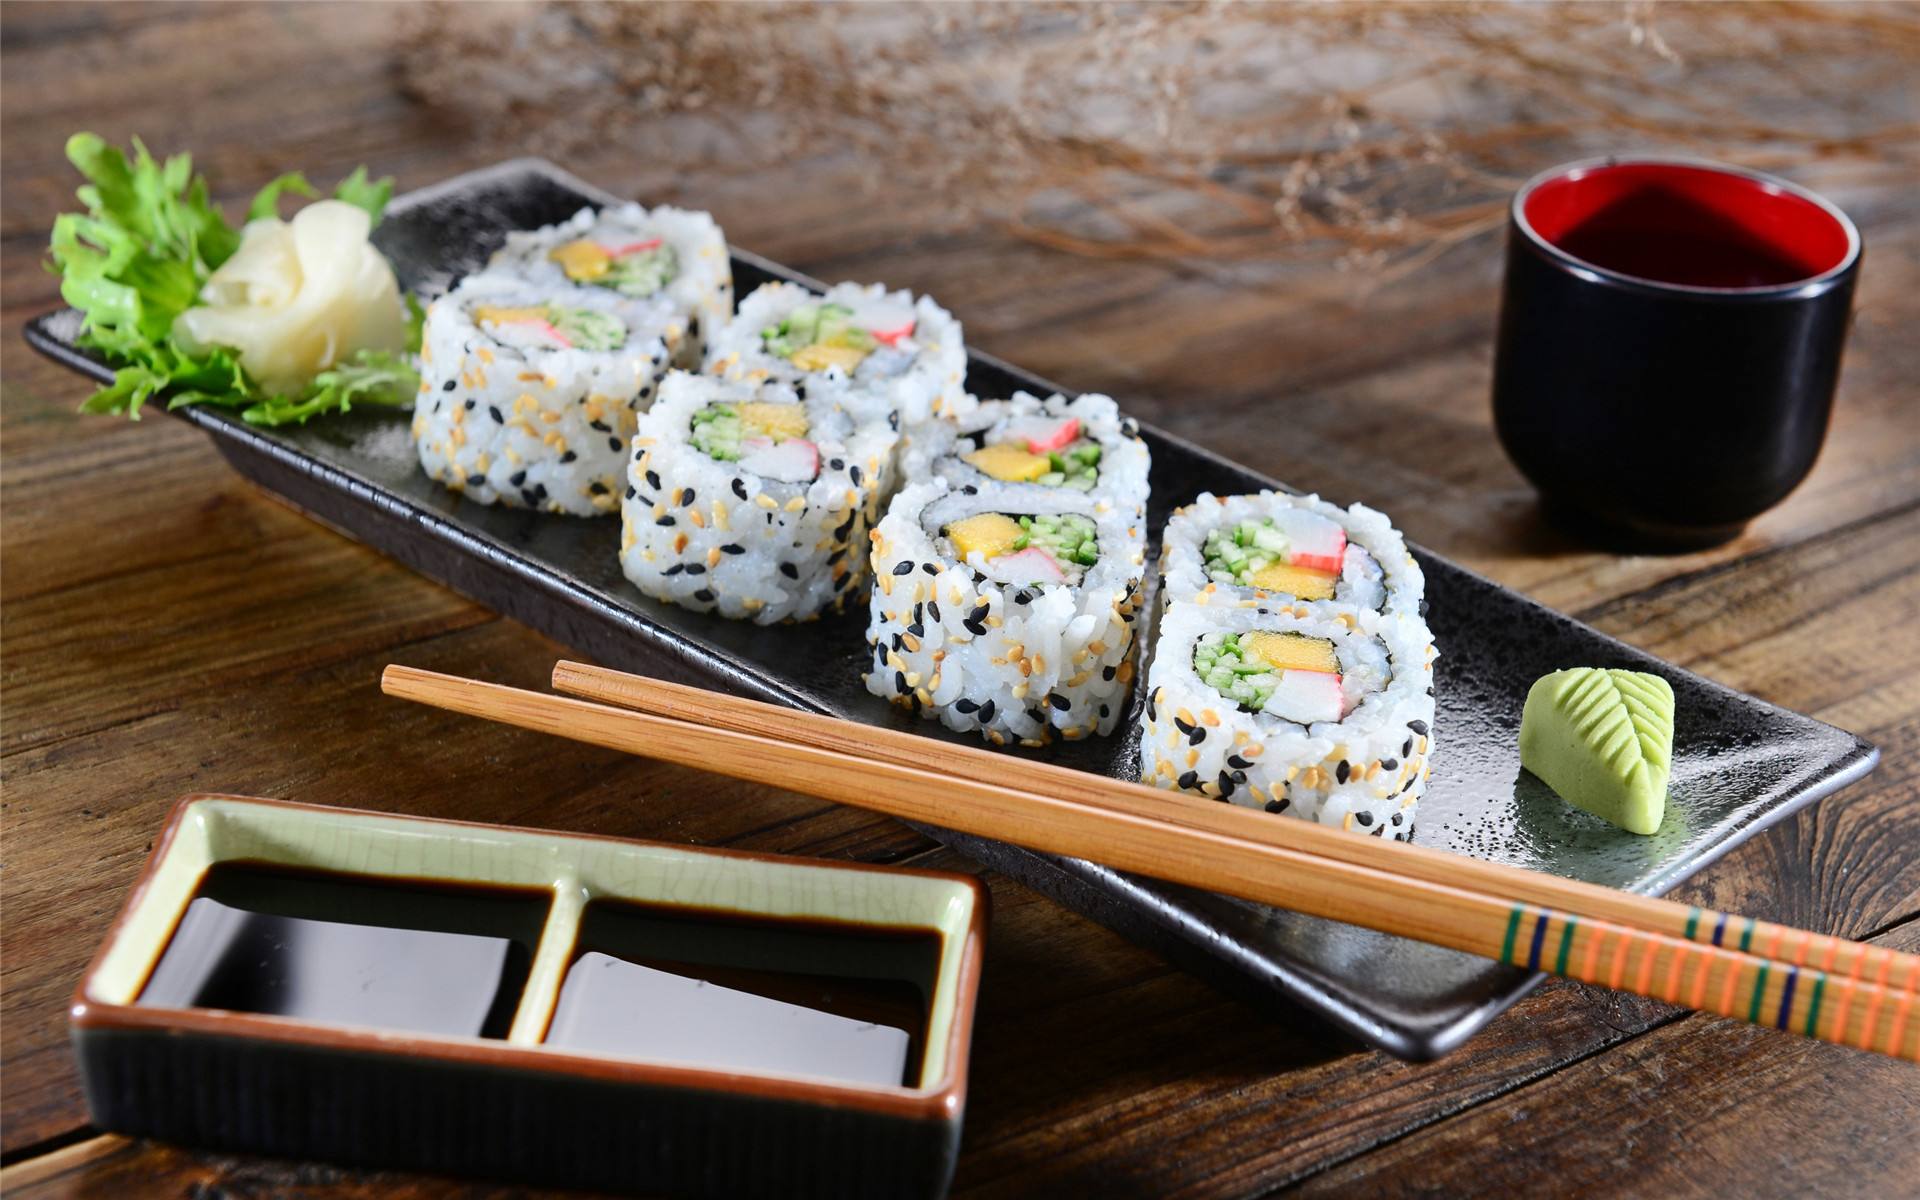 名食园寿司技术培训米和水的比例:寿司米淘洗净,沥干水,盛入电饭锅中